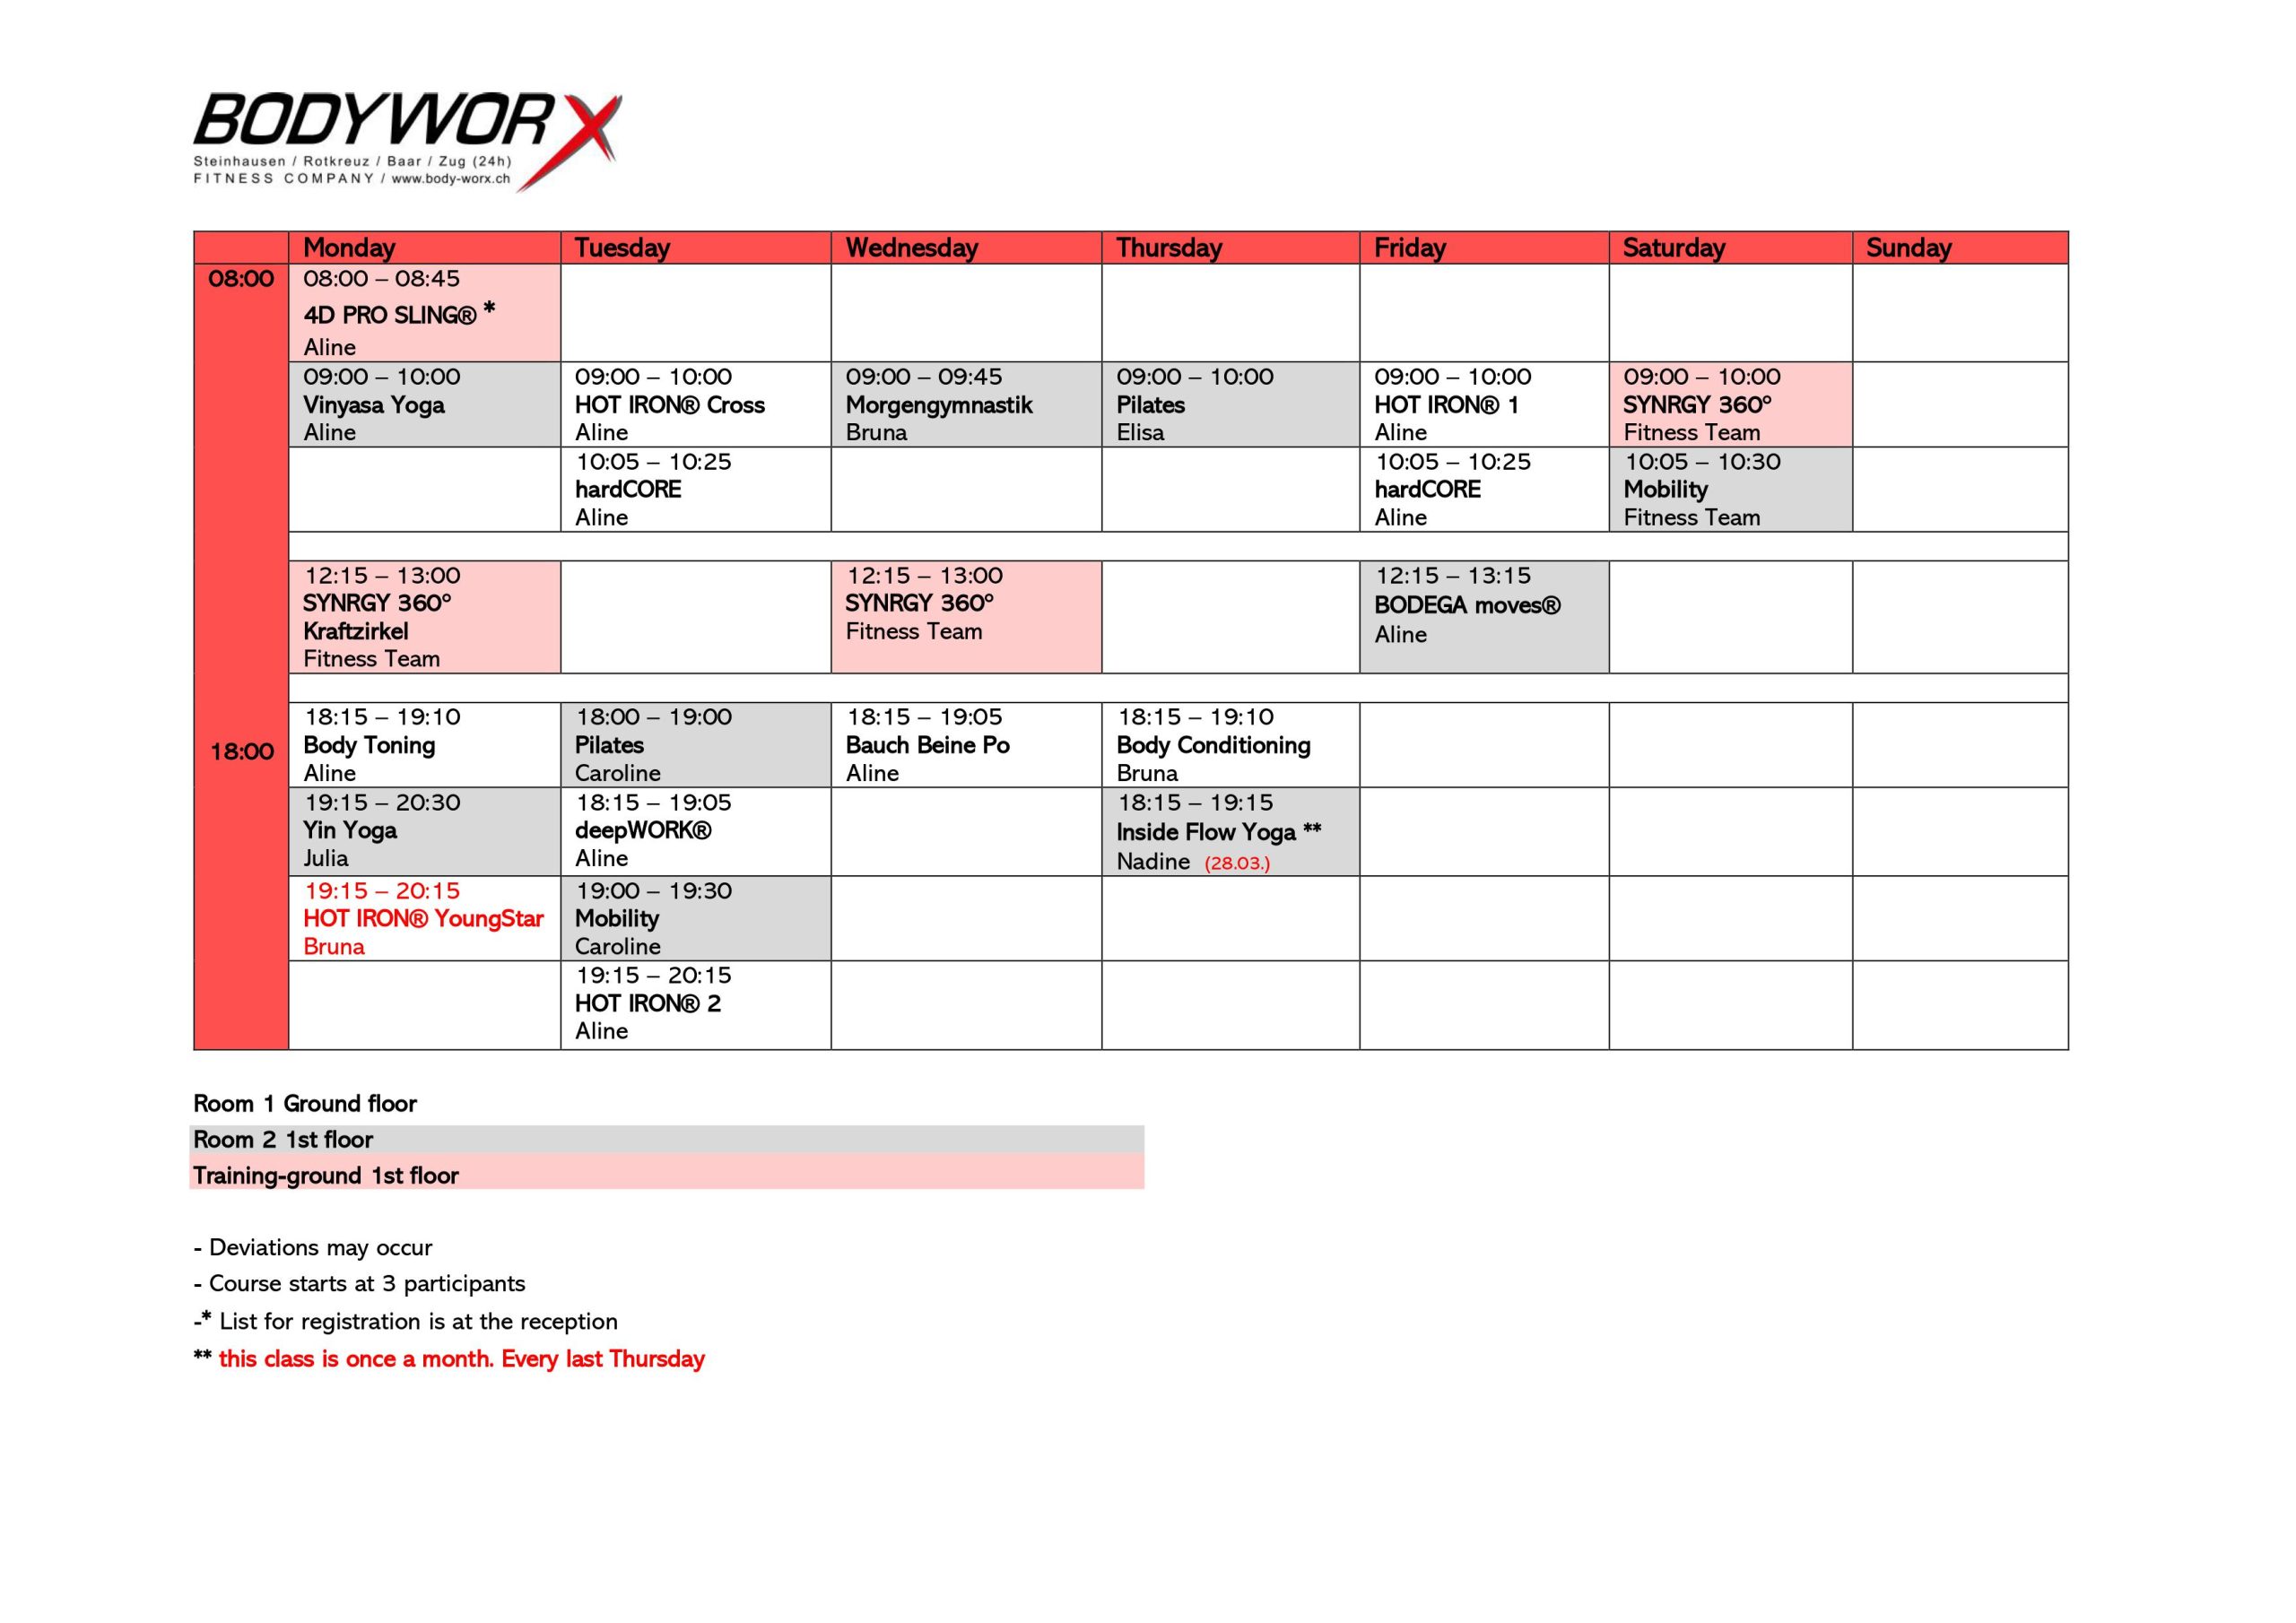 Course schedule | BodyWorx